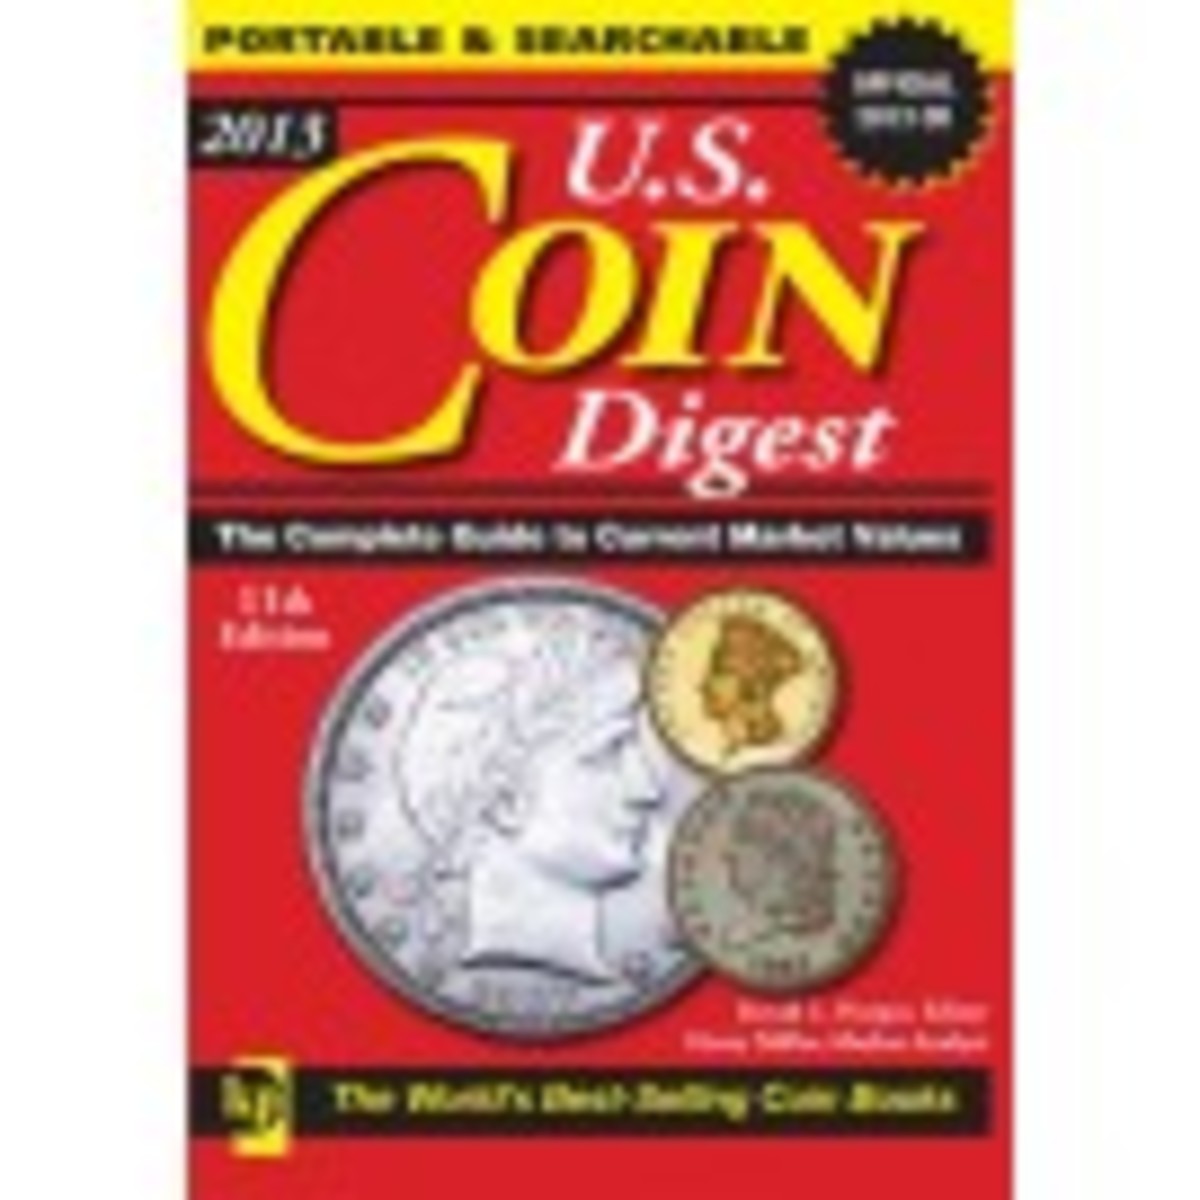 2013 U.S. Coin Digest